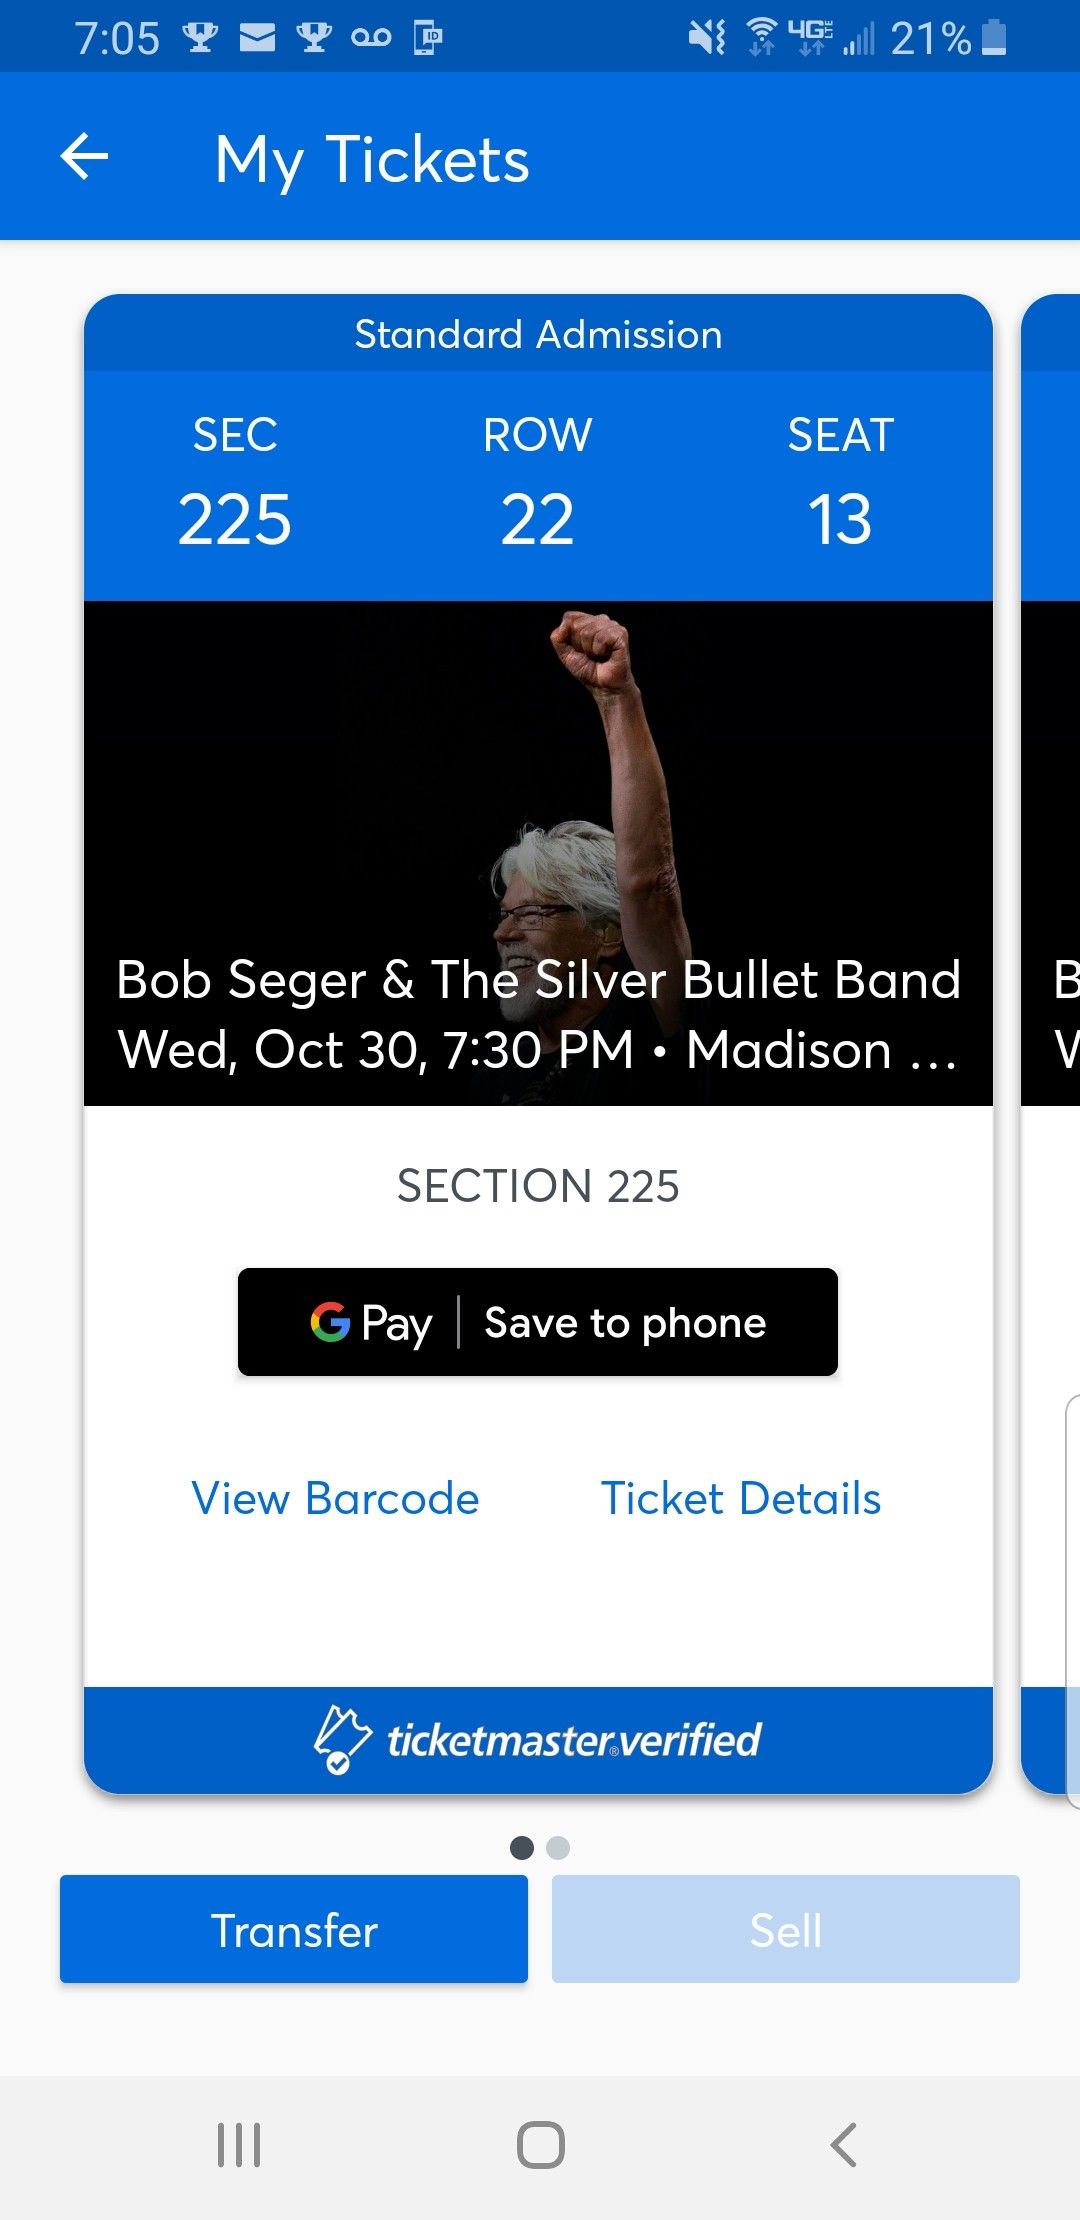 Bob Seger concert tickets